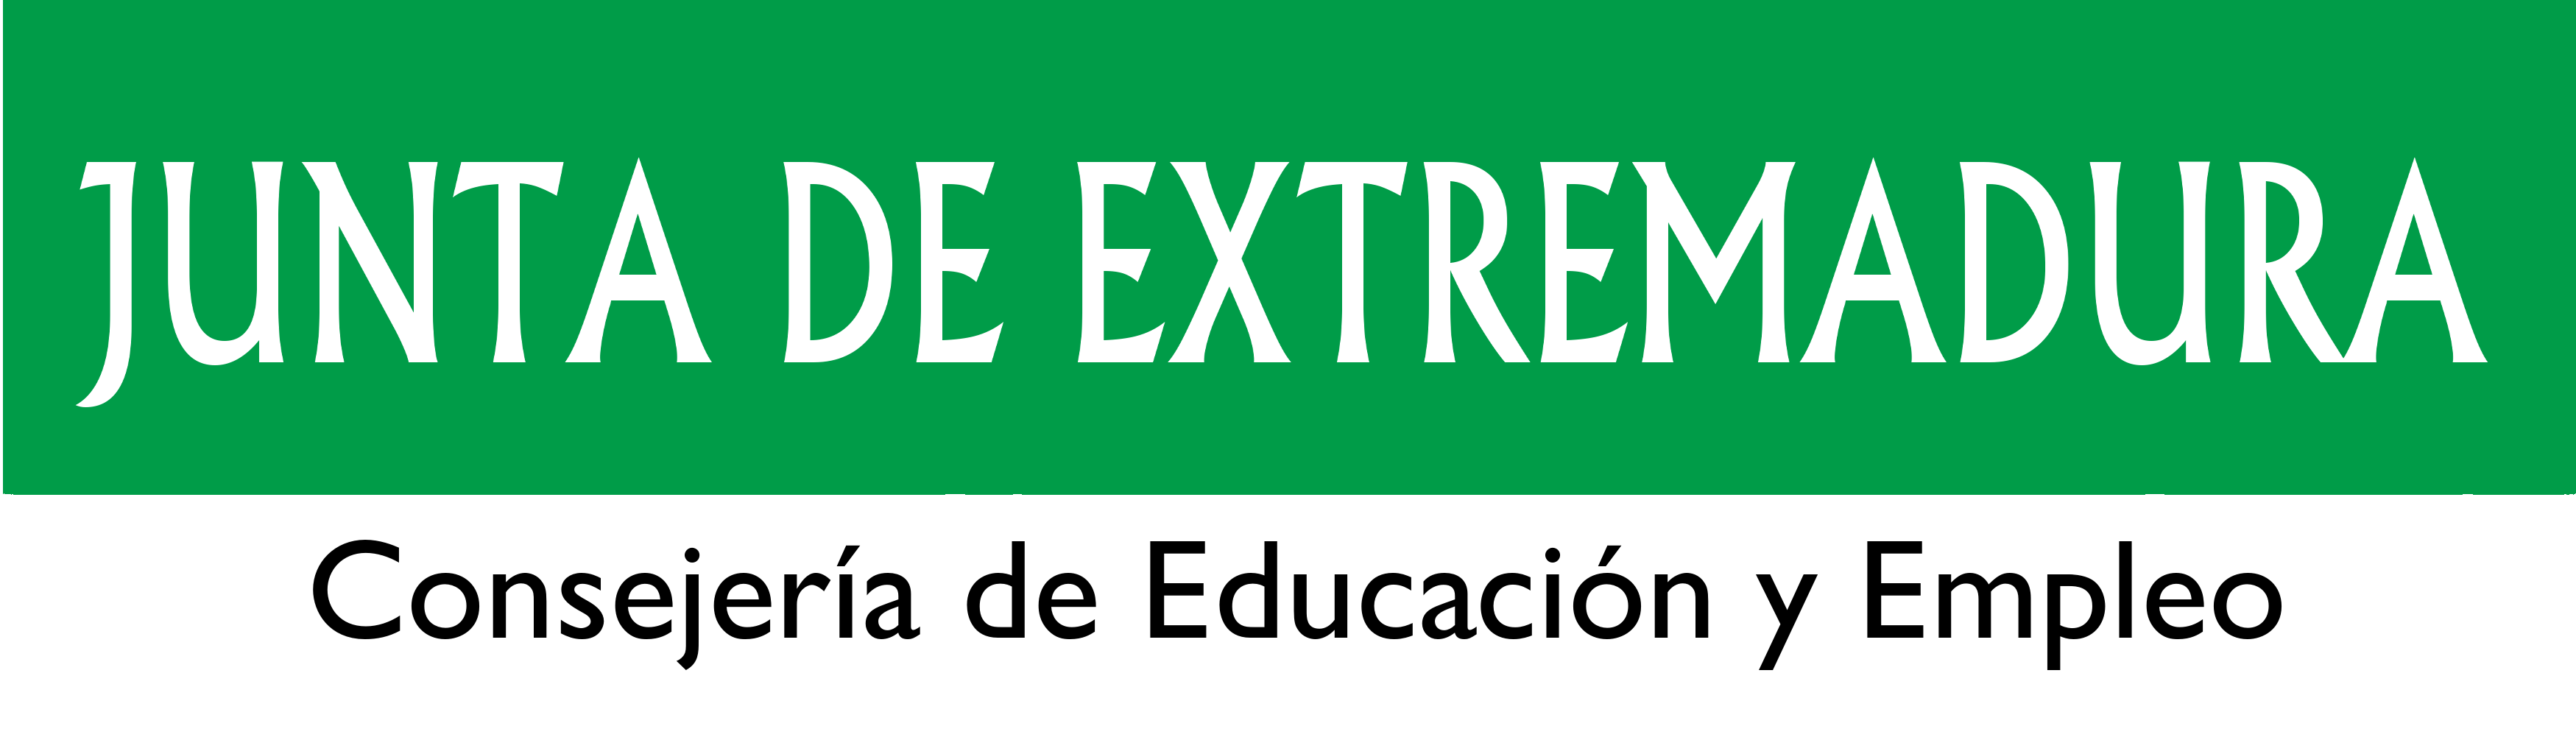 LOGO JUNTA DE EXTREMADURA CONSEJERIA DE EDUCACION Y EMPLEO